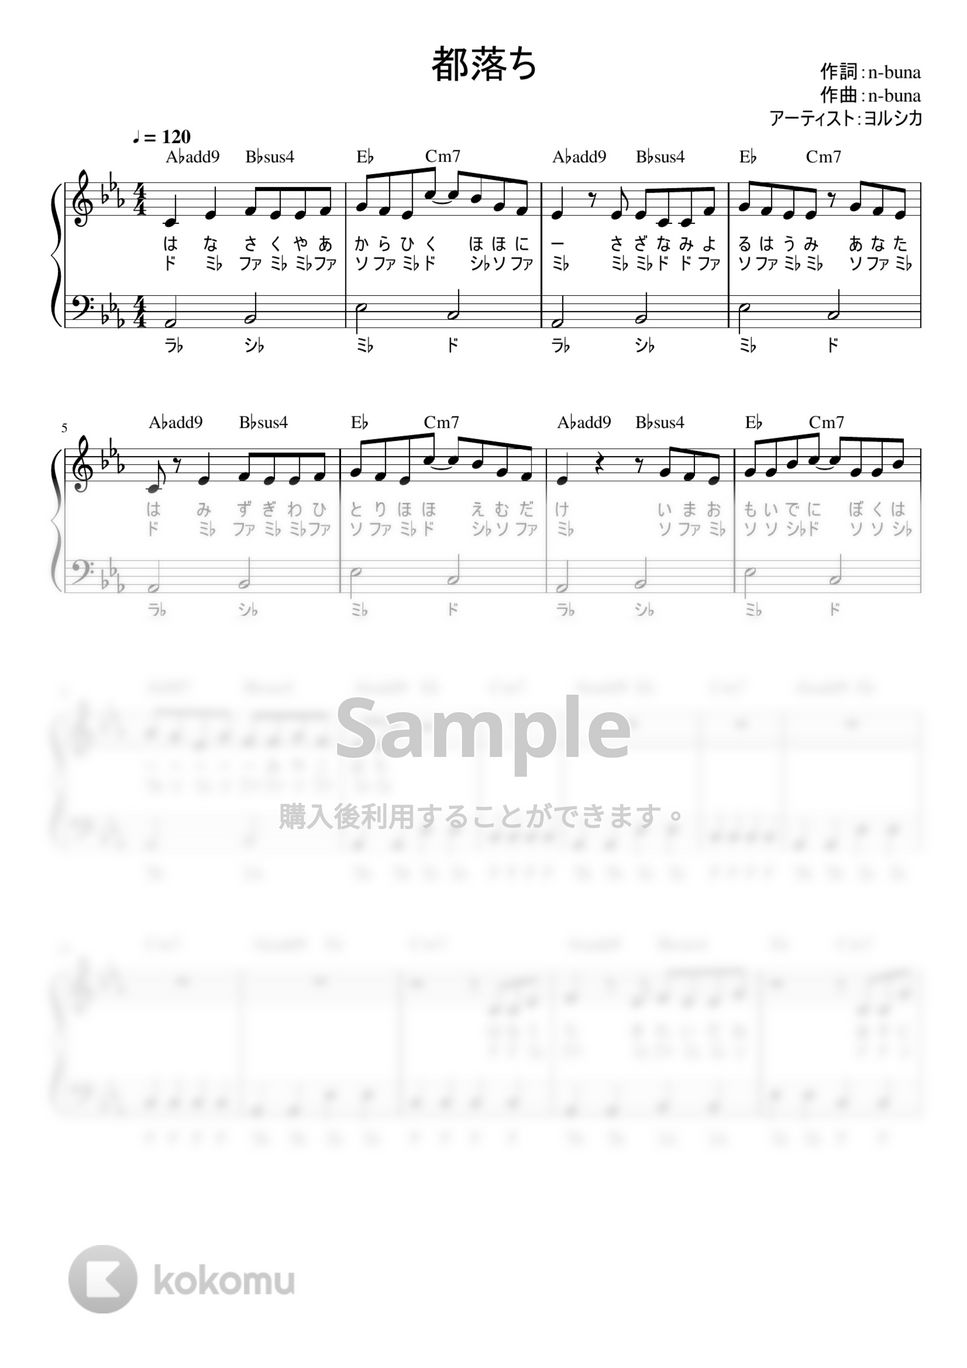 ヨルシカ - 都落ち (かんたん / 歌詞付き / ドレミ付き / 初心者) by piano.tokyo